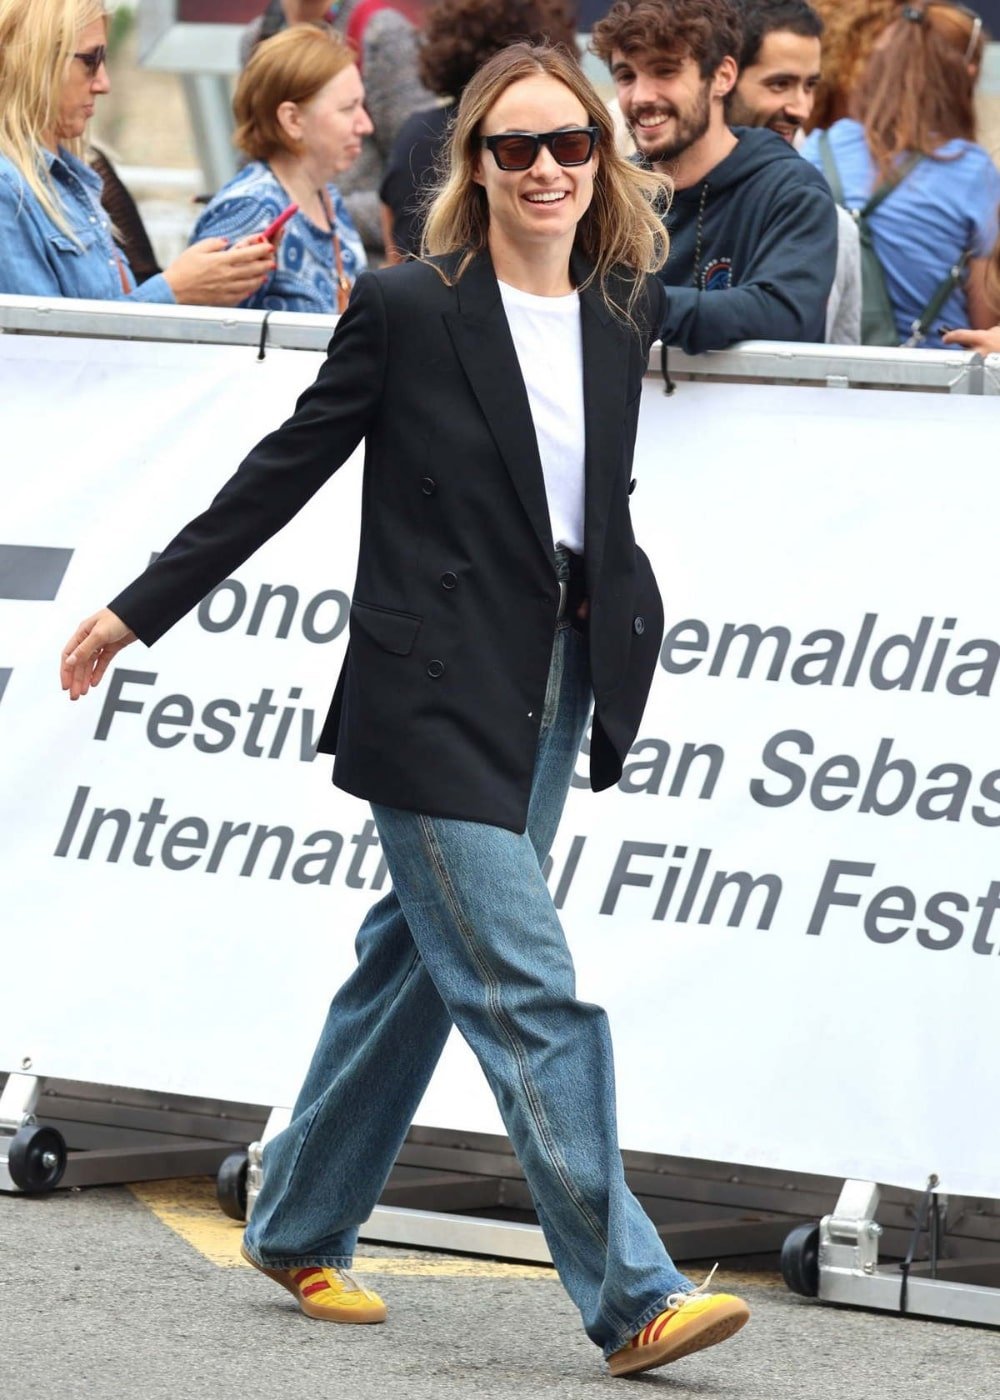 Olivia Wilde - calça jeans, t-shirt branca, blazer preto e tenis adidas velosamba - Olivia Wilde - Outono - andando na rua usando óculos de sol - https://stealthelook.com.br